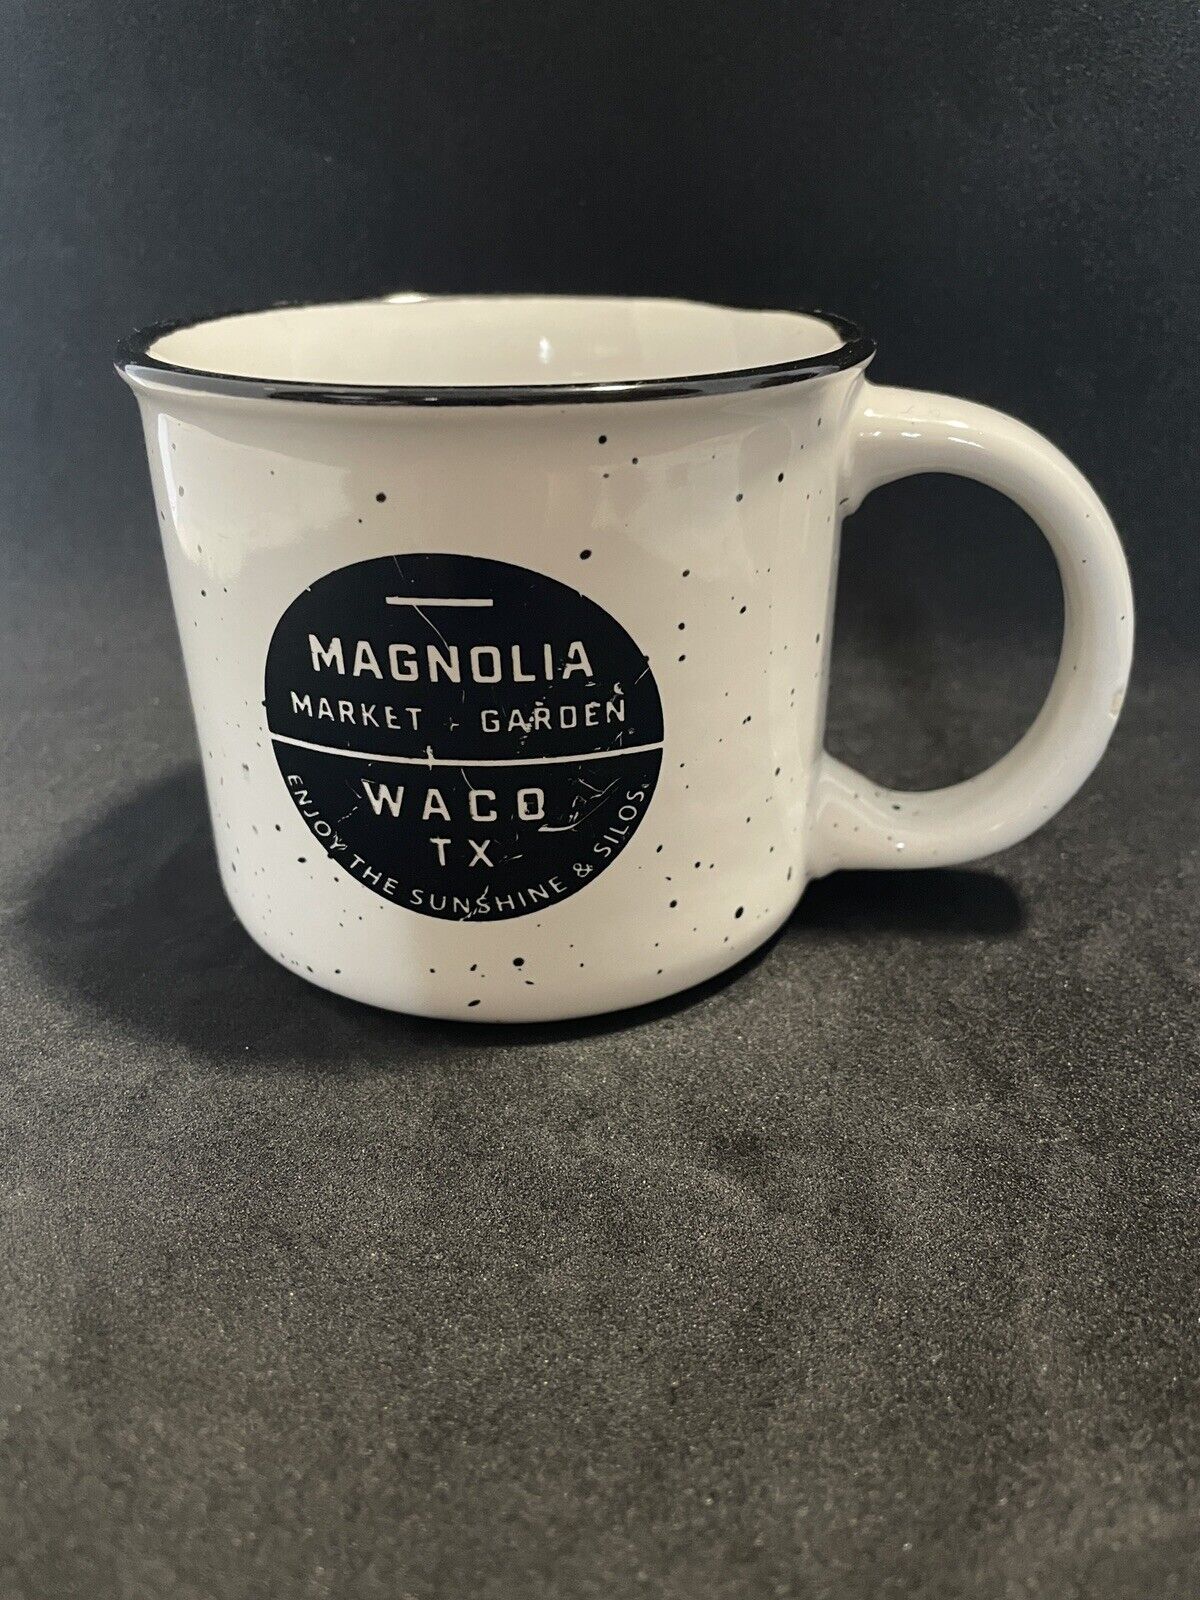 magnolia Market and gardens Waco Tx Campfire Mug